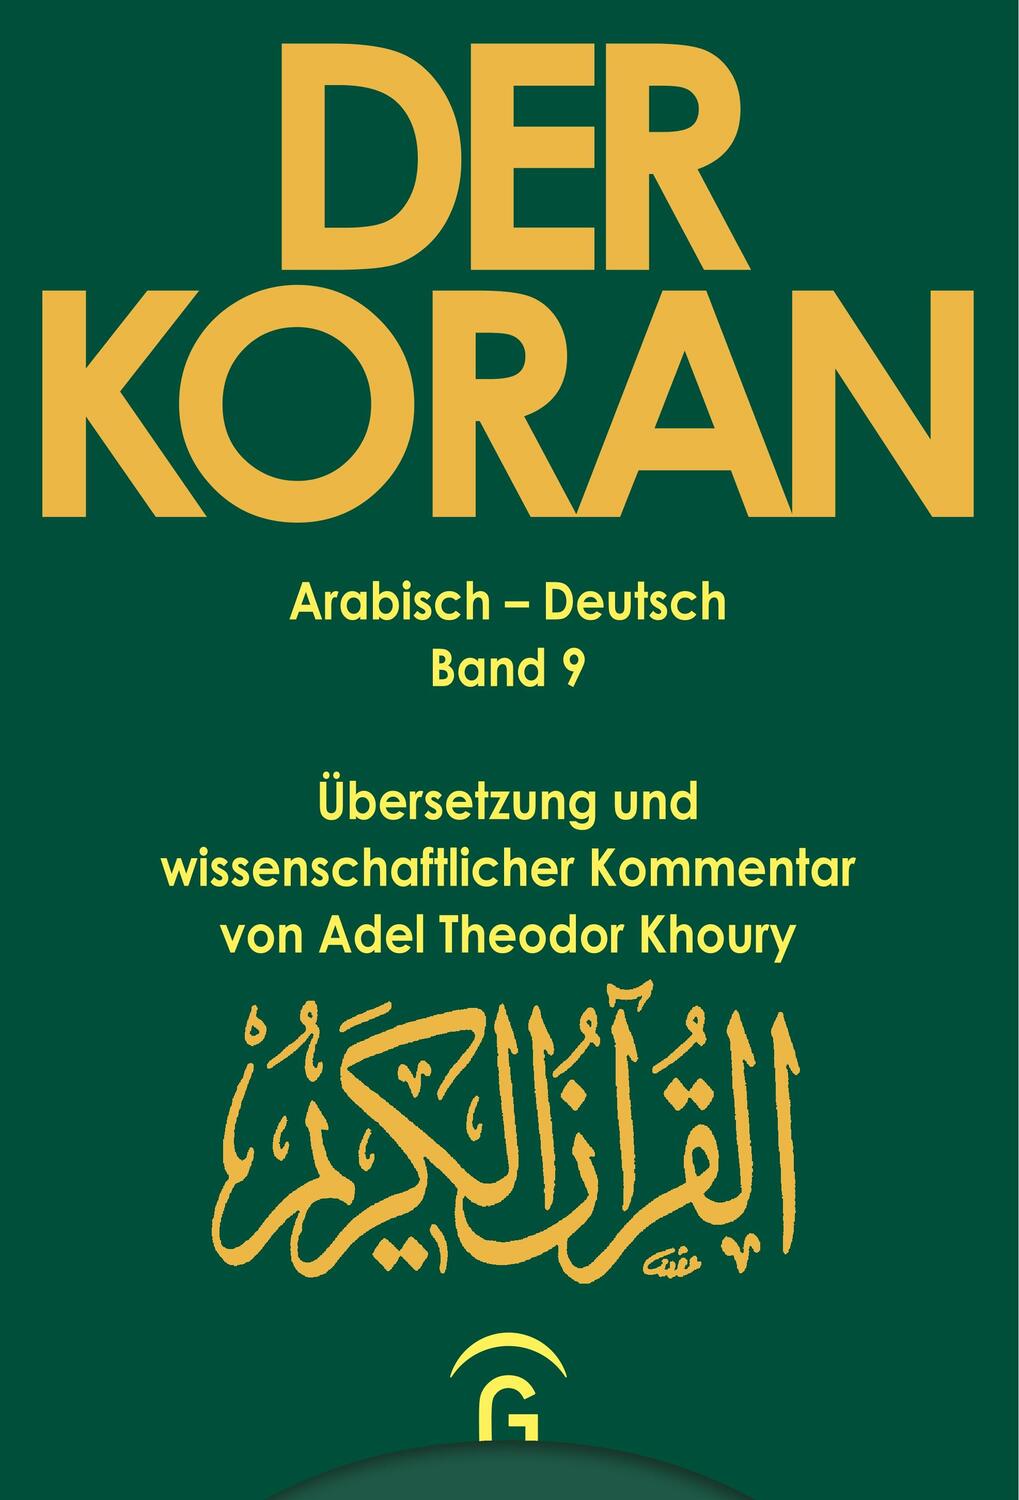 Der Koran - Arabisch-Deutsch